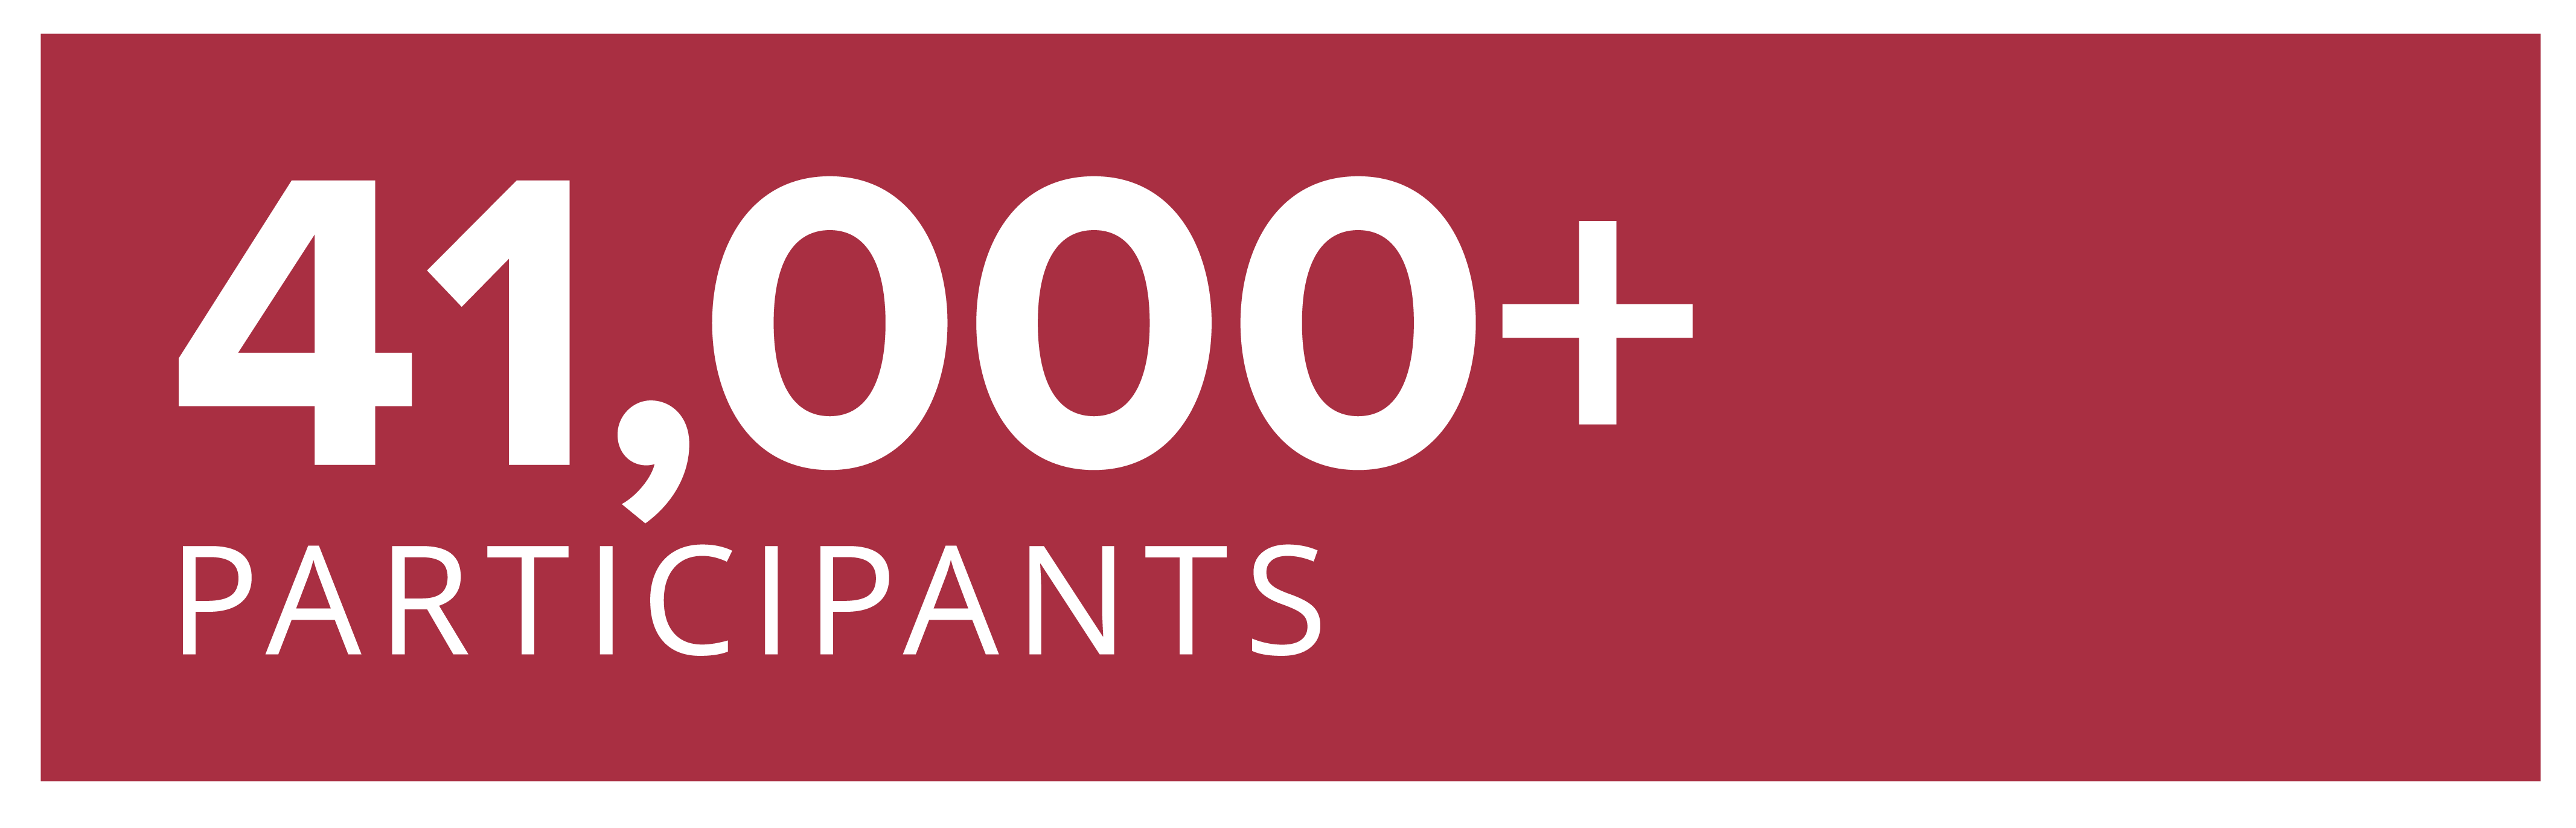 41,000+ Participants